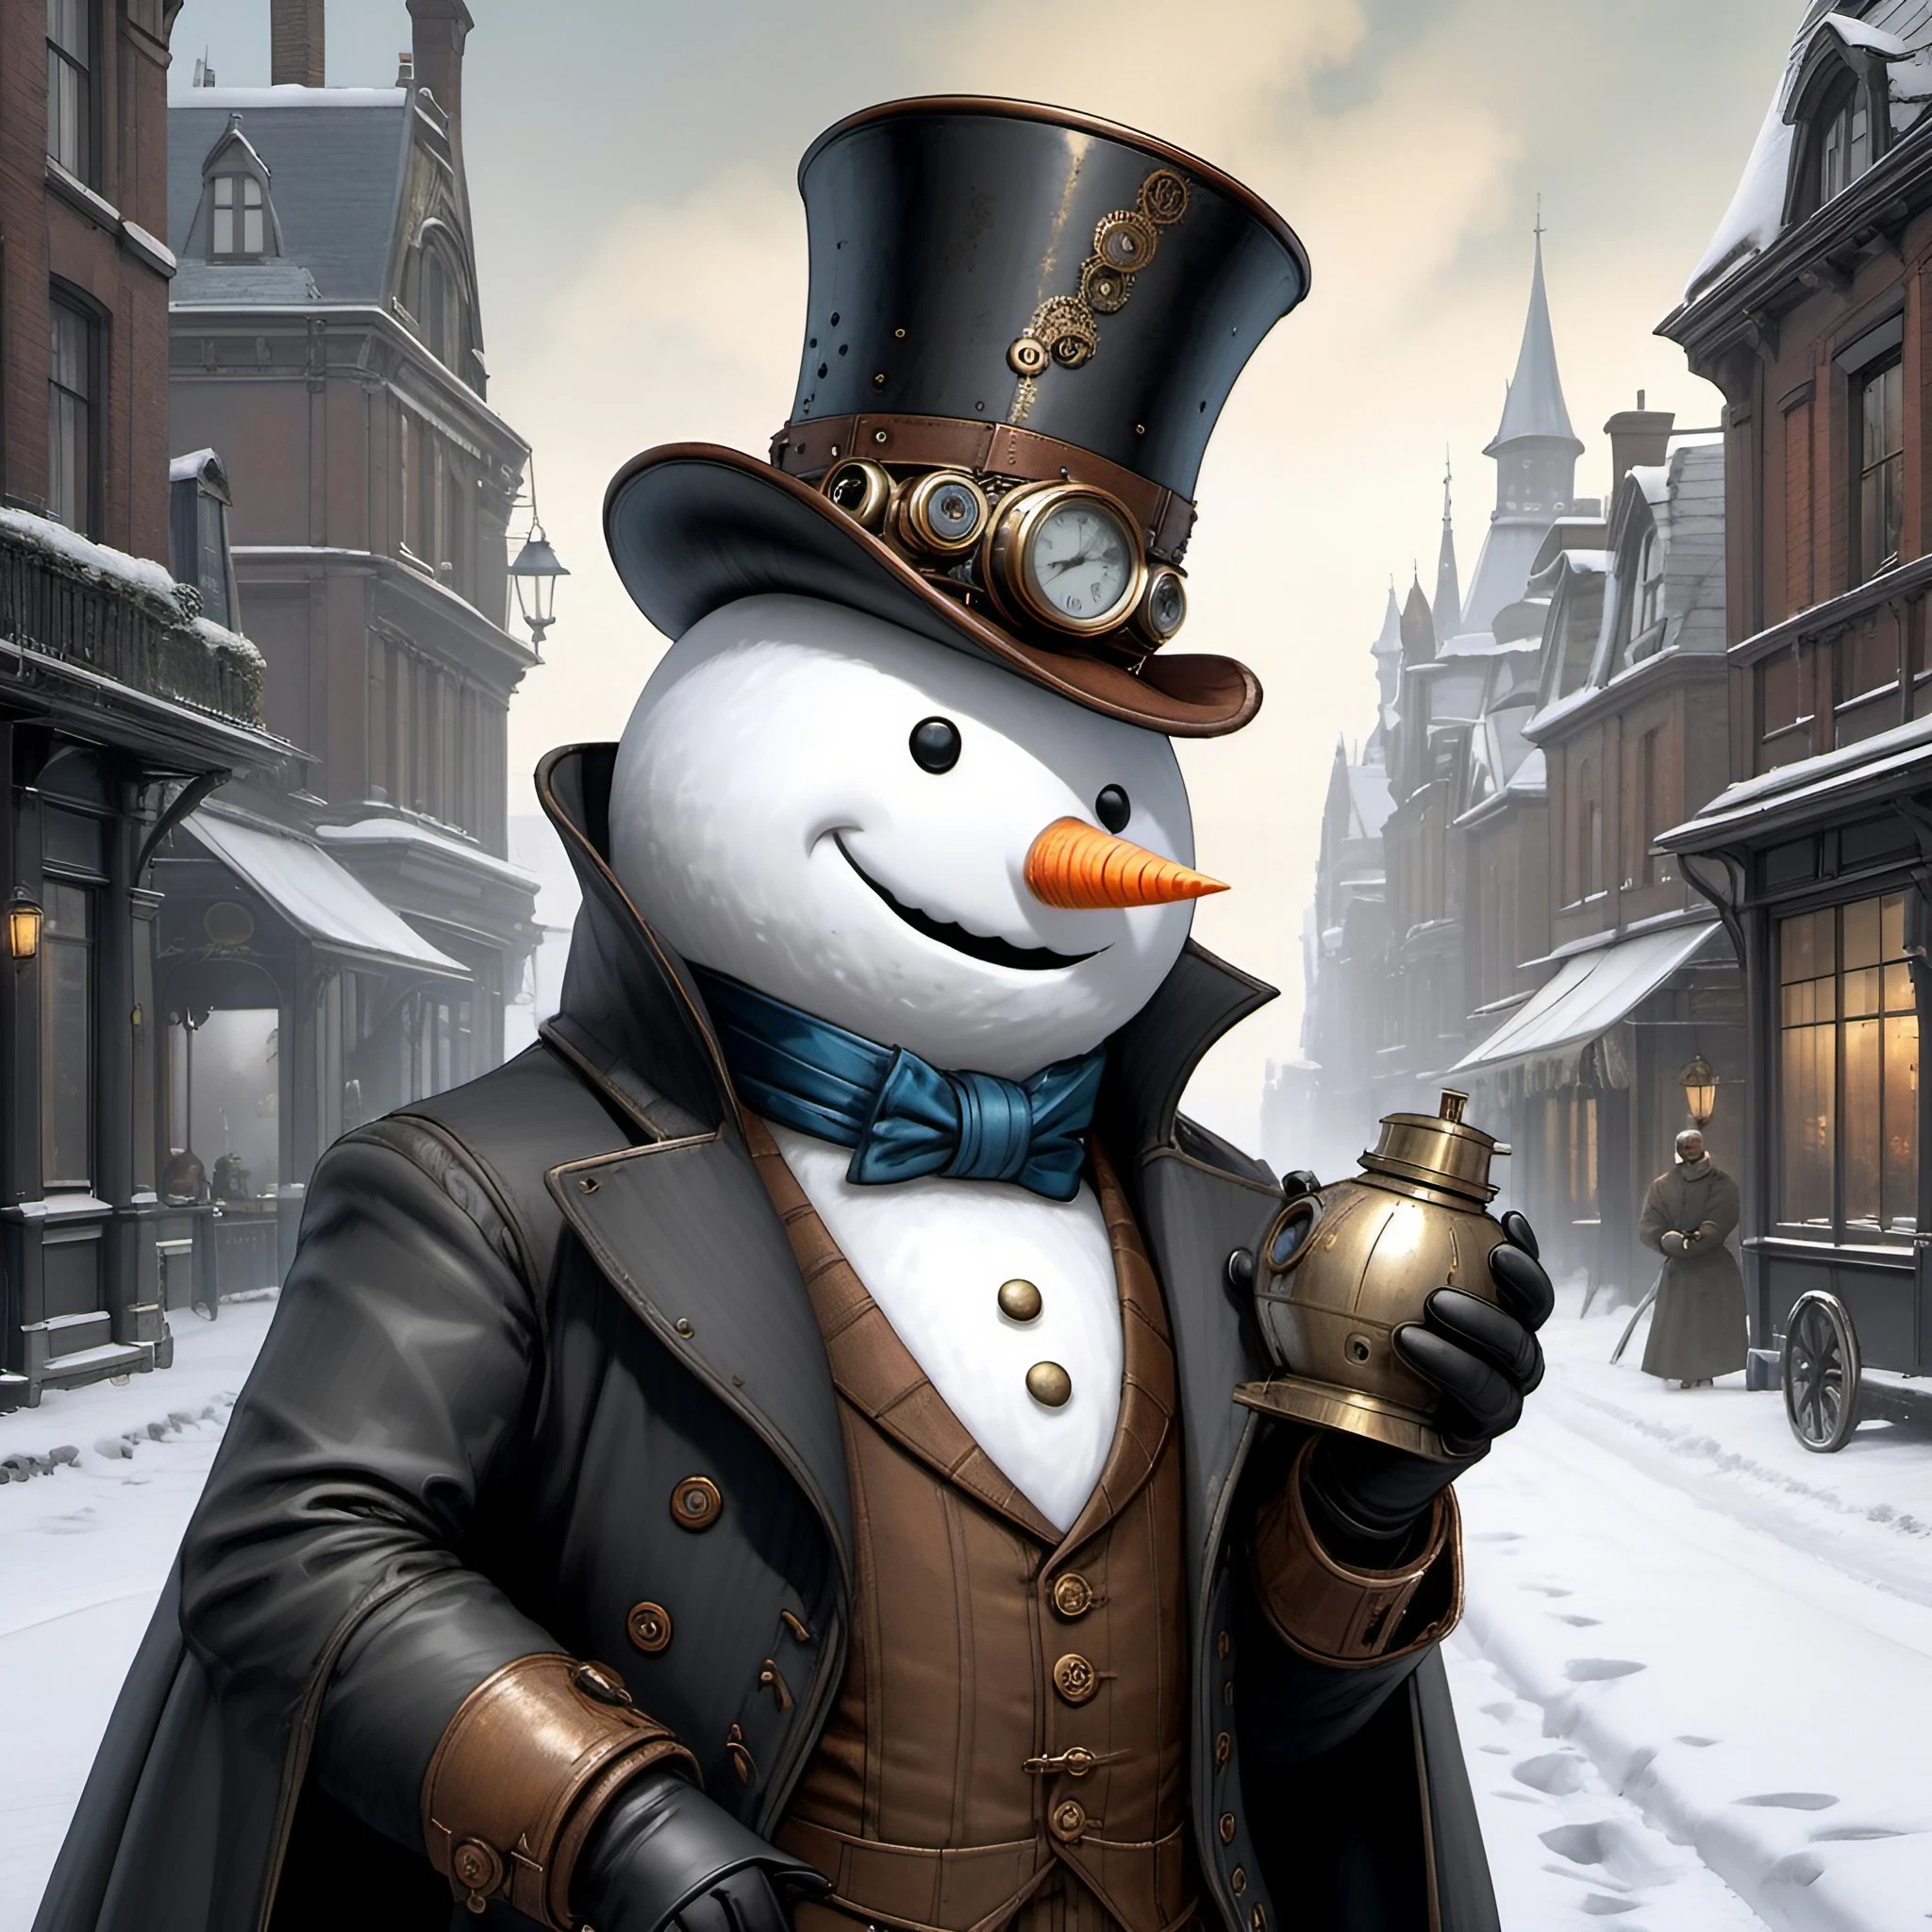 ブラックジョークな雪だるまとスチームパンクな田舎町＆ホラーな帽子のキャラクターの3D風リアルイラスト画像